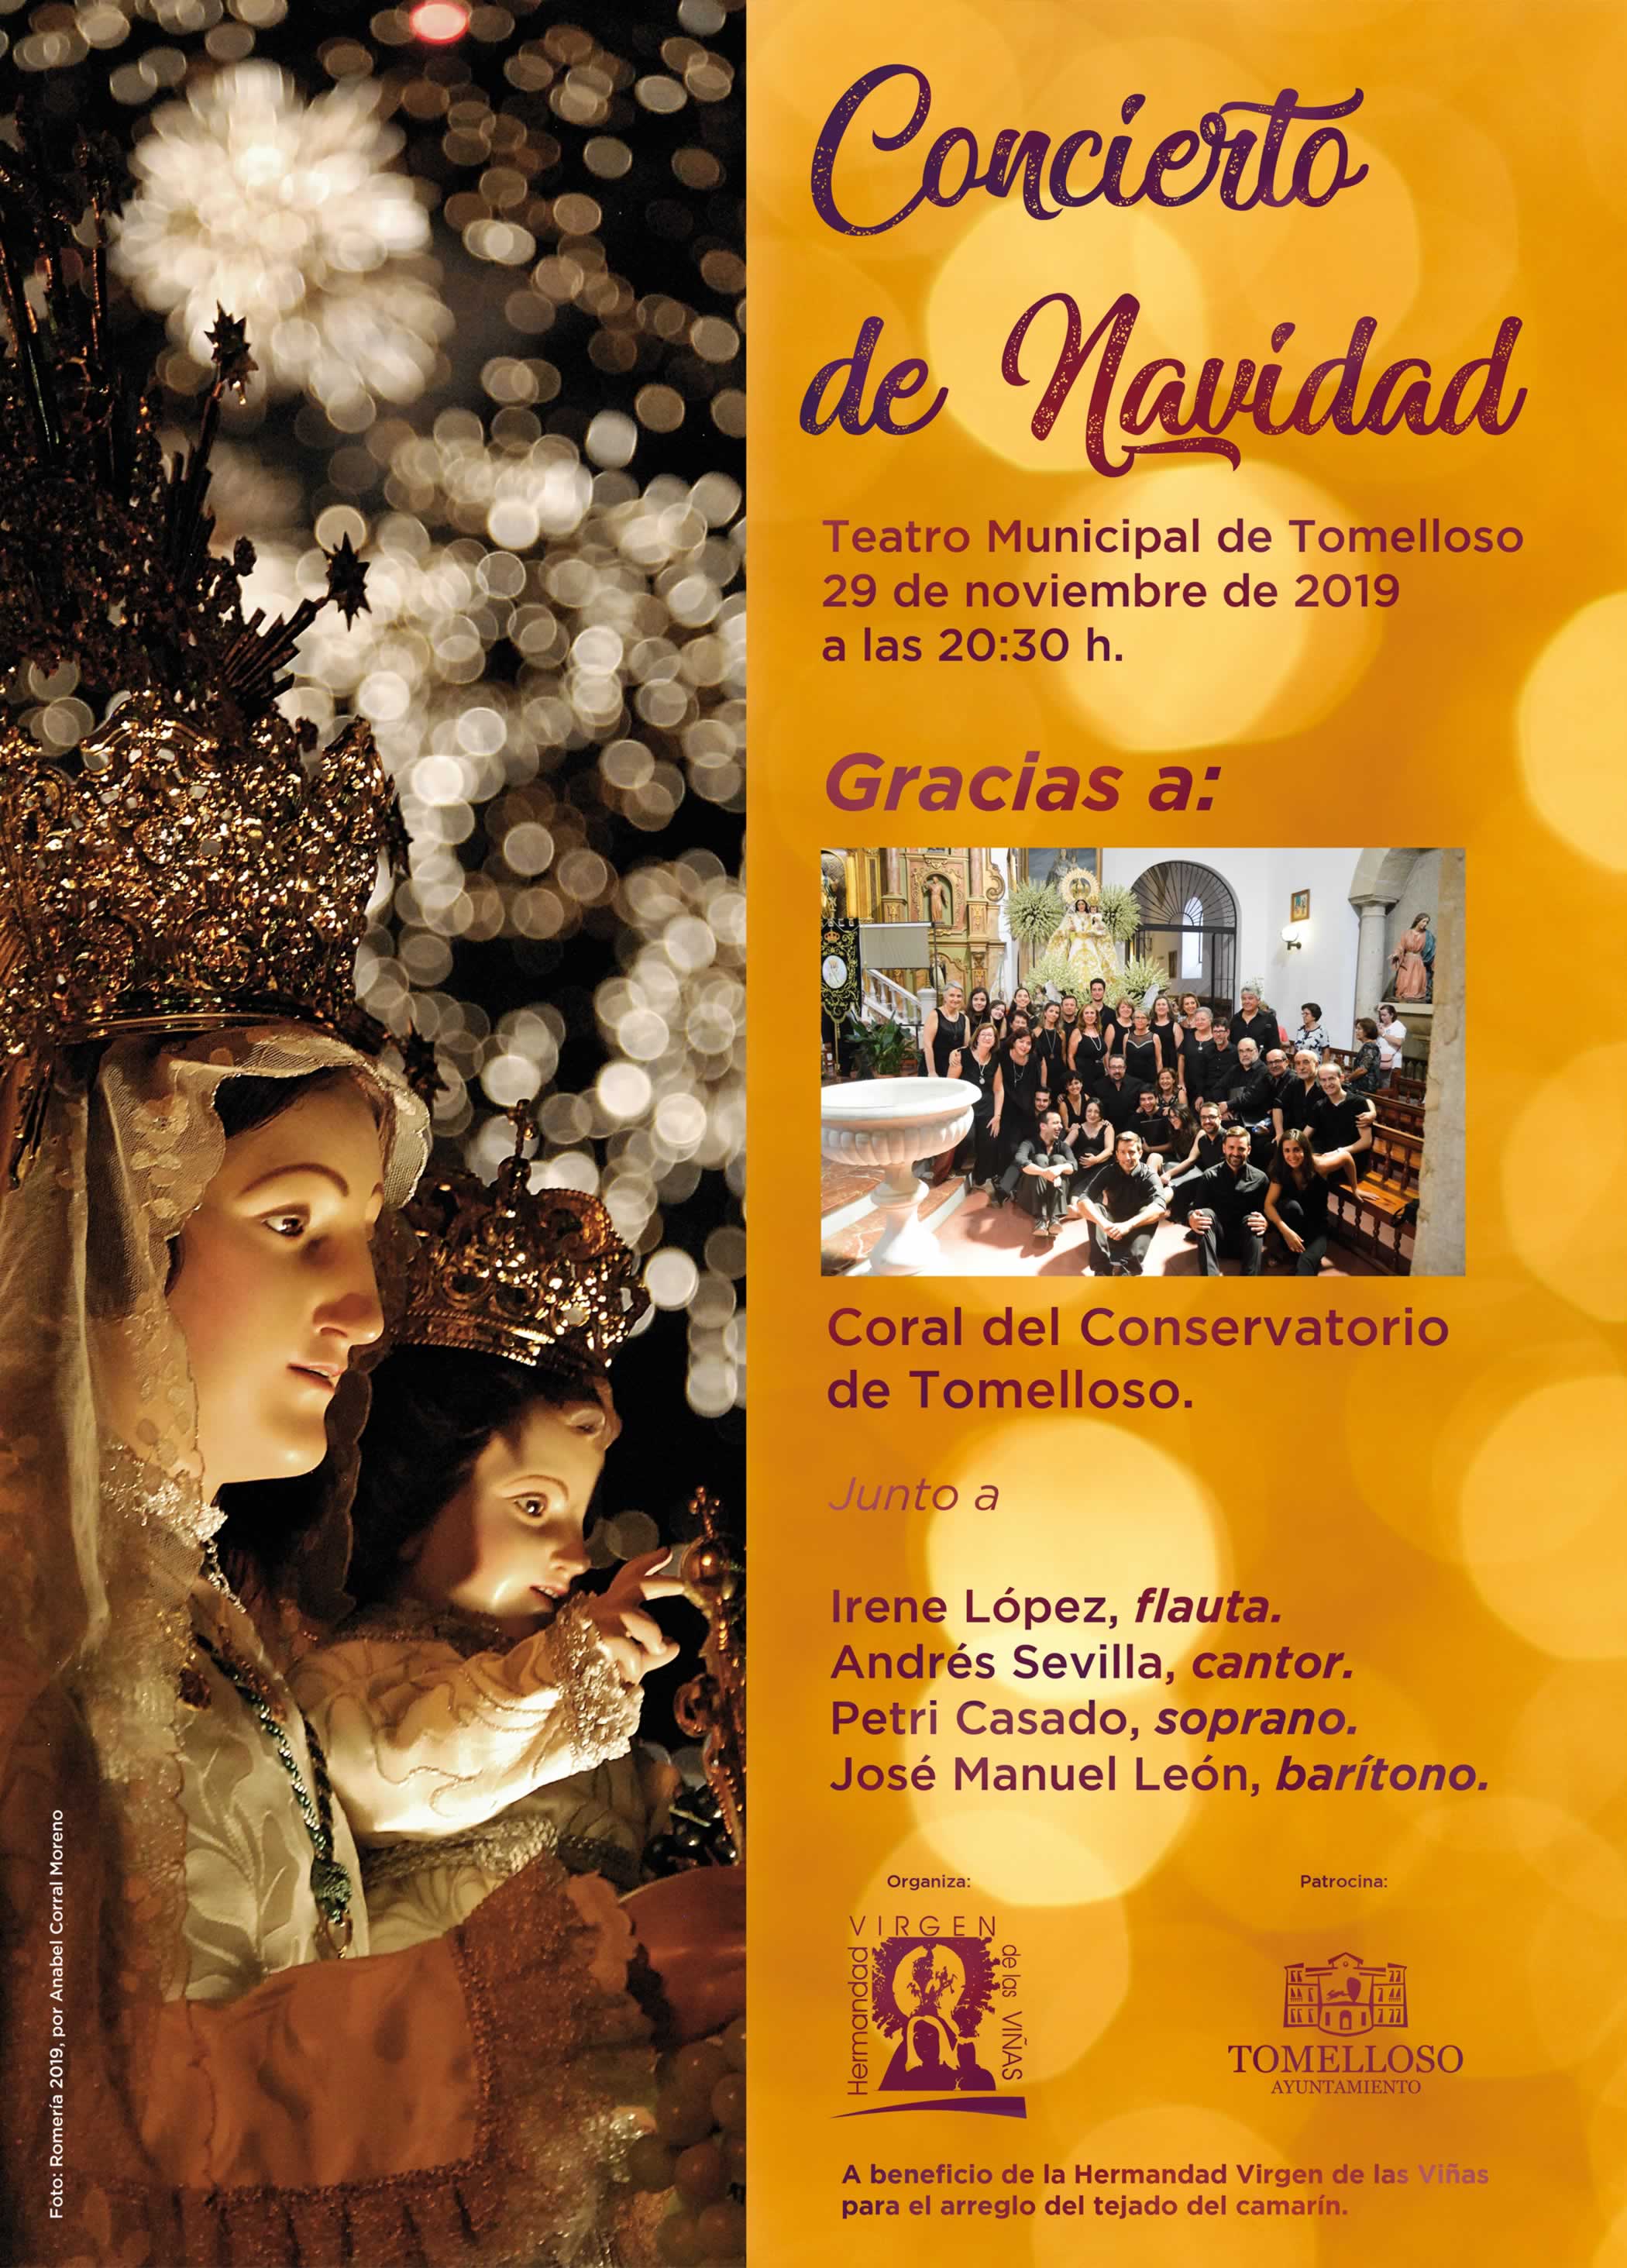 Este fin de semana, Tomelloso acogerá el Concierto de Navidad y el II Retiro de Adviento en Pinilla